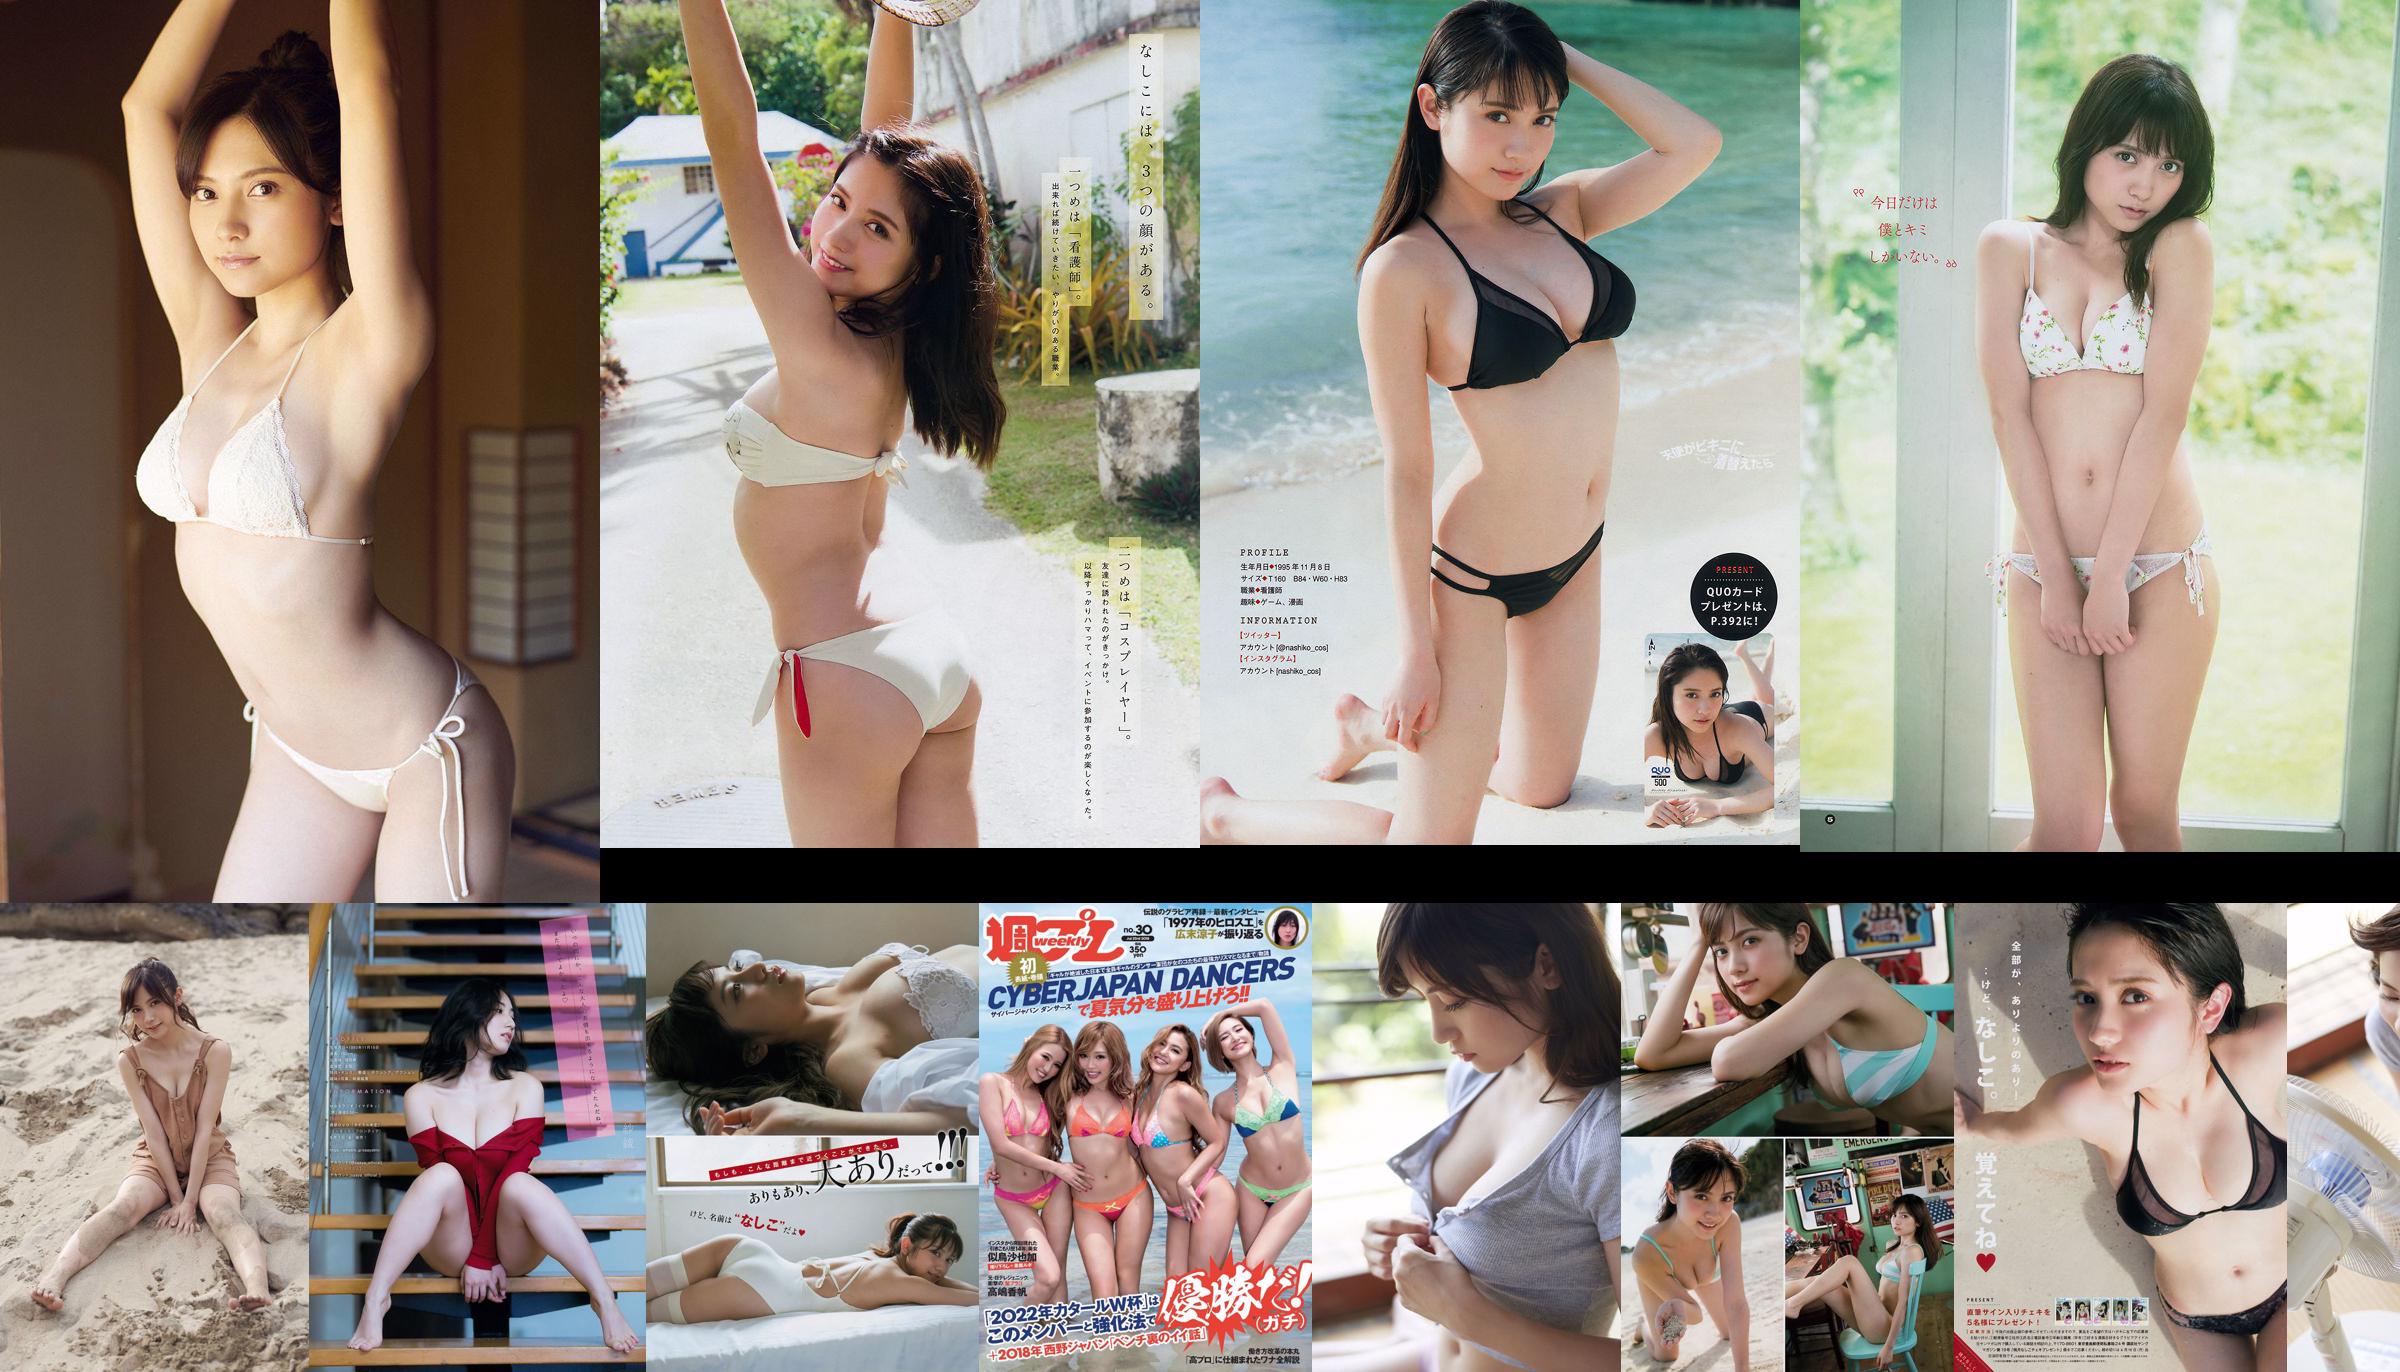 [FLASH] Nashiko Momotsuki Yua Shinkawa Banbi Watanabe Fujiko Kojima Miu Nakamura 2018.06.19 ภาพโมชิ No.8ac2f5 หน้า 7